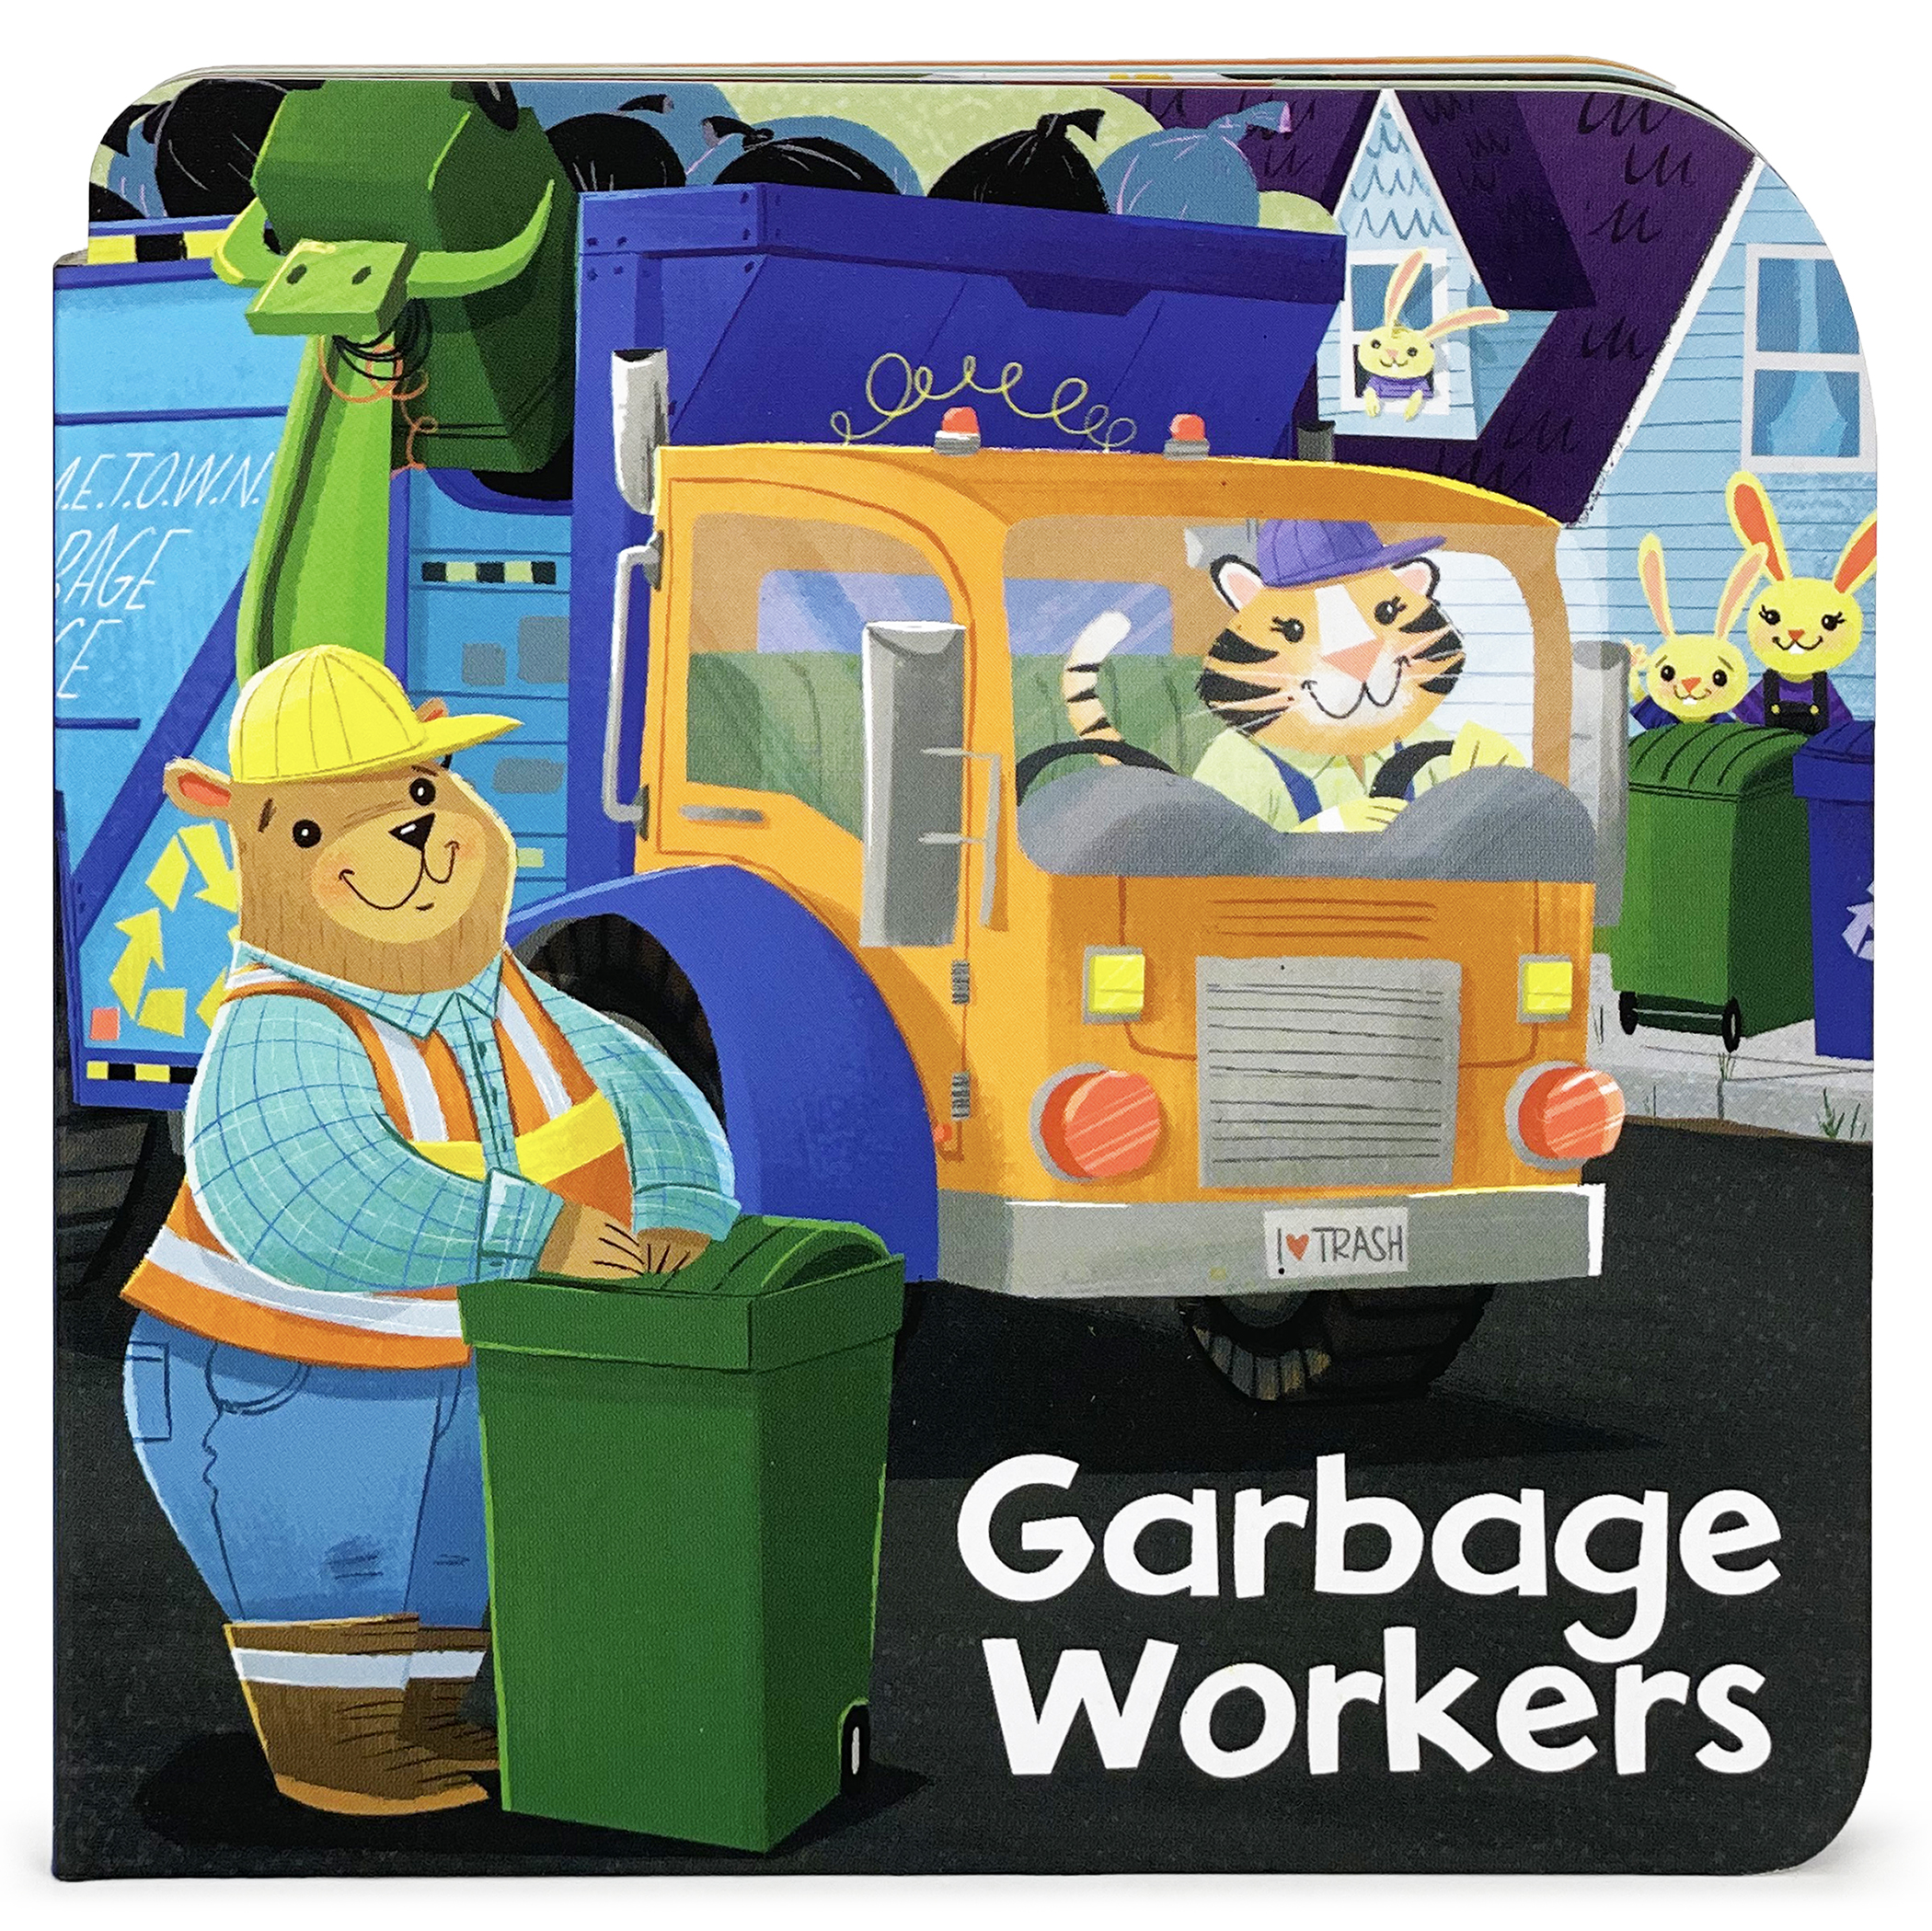 Garbage Truck Tales